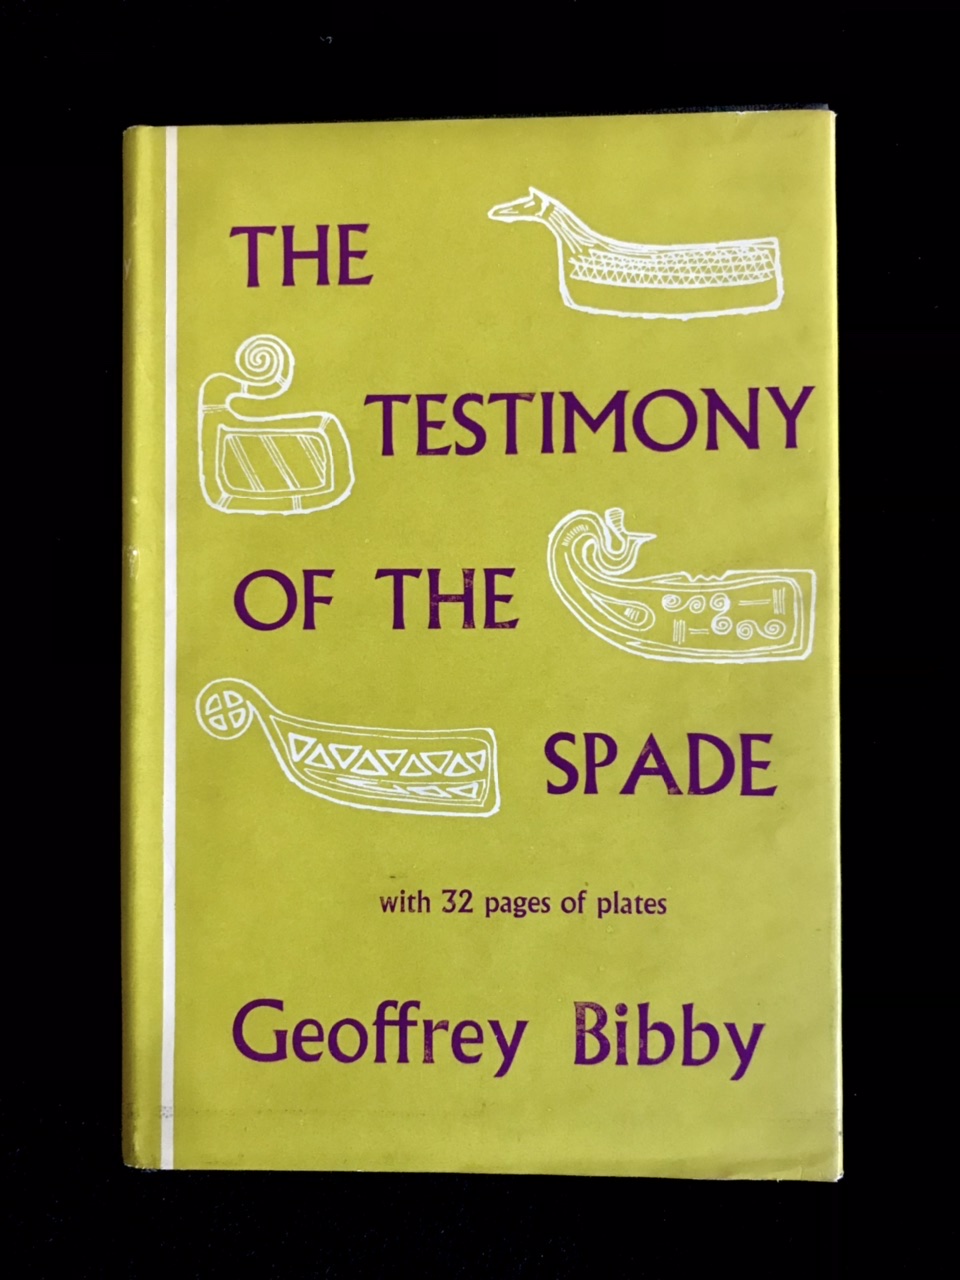 The Testimony Of The Spade by Geoffrey Bibby